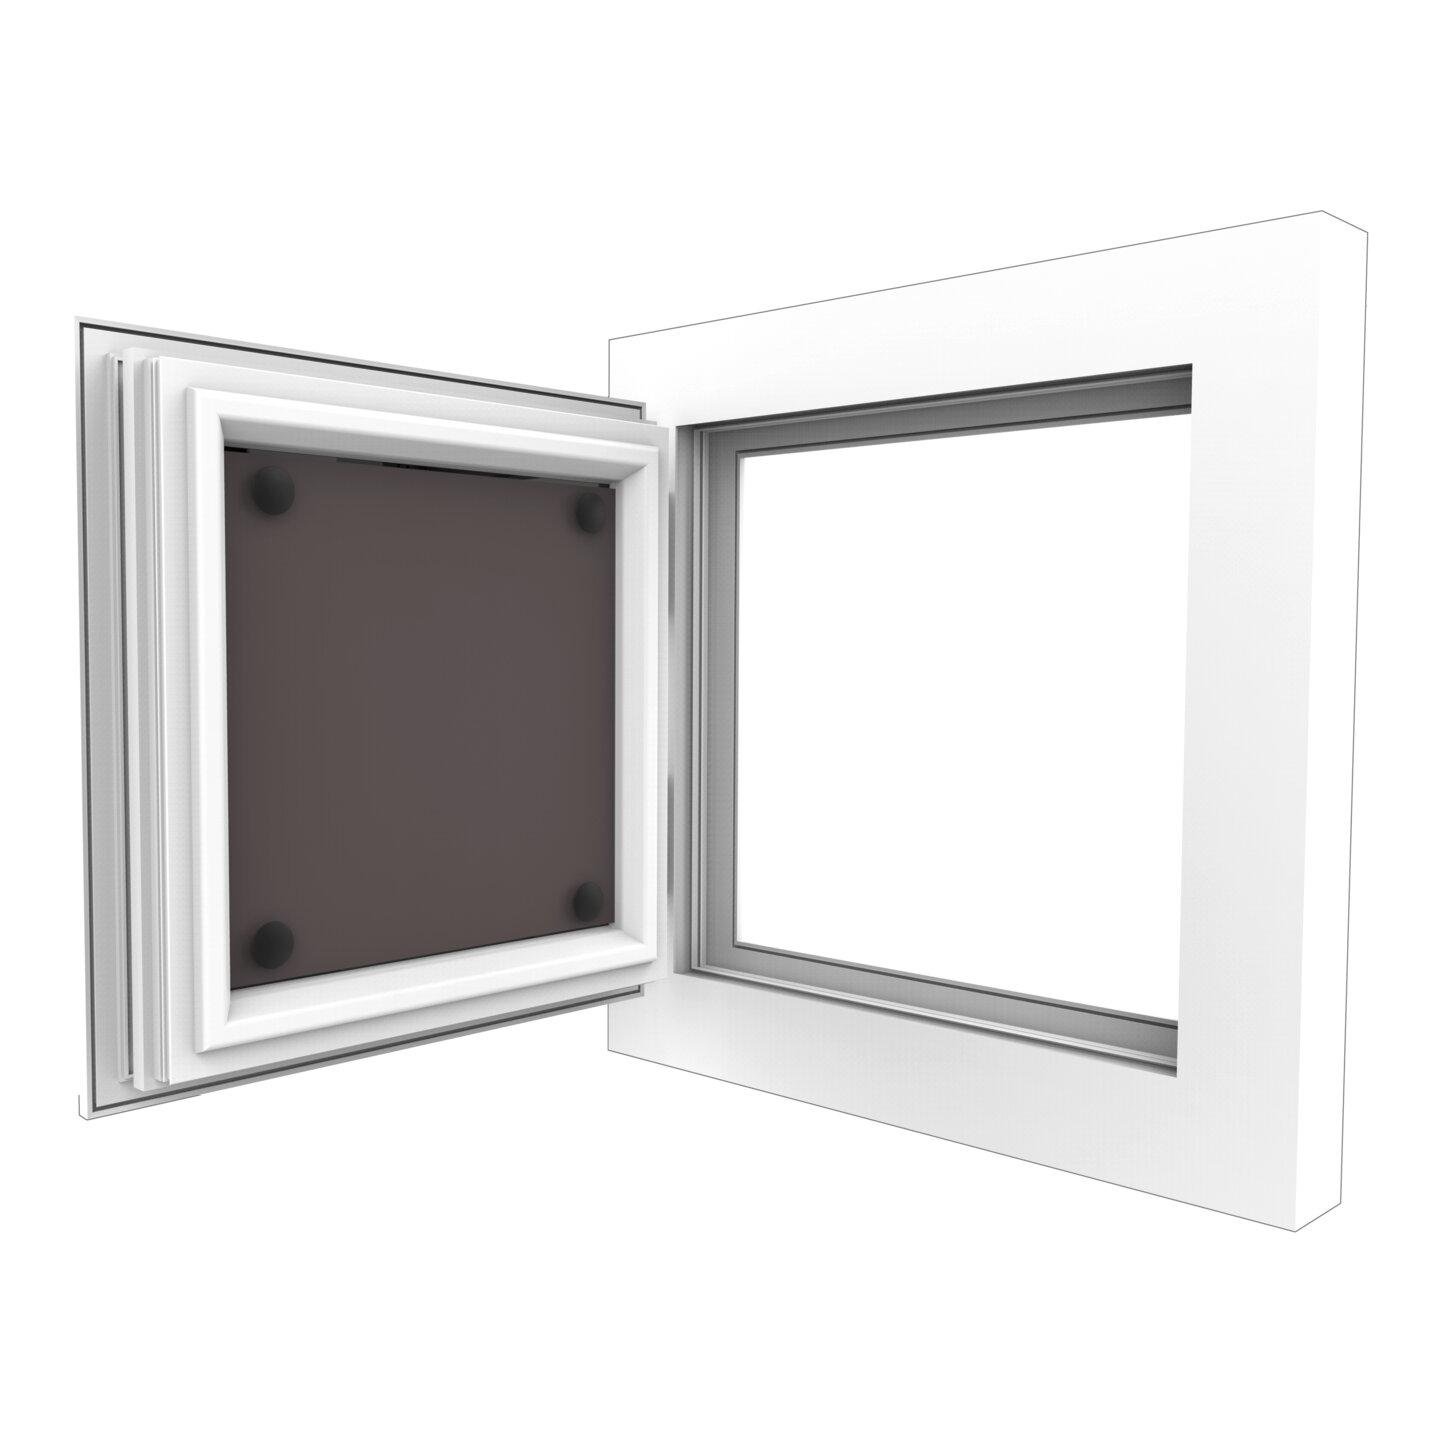 Windhager Hitzeschutz - Gewebe für Fenster